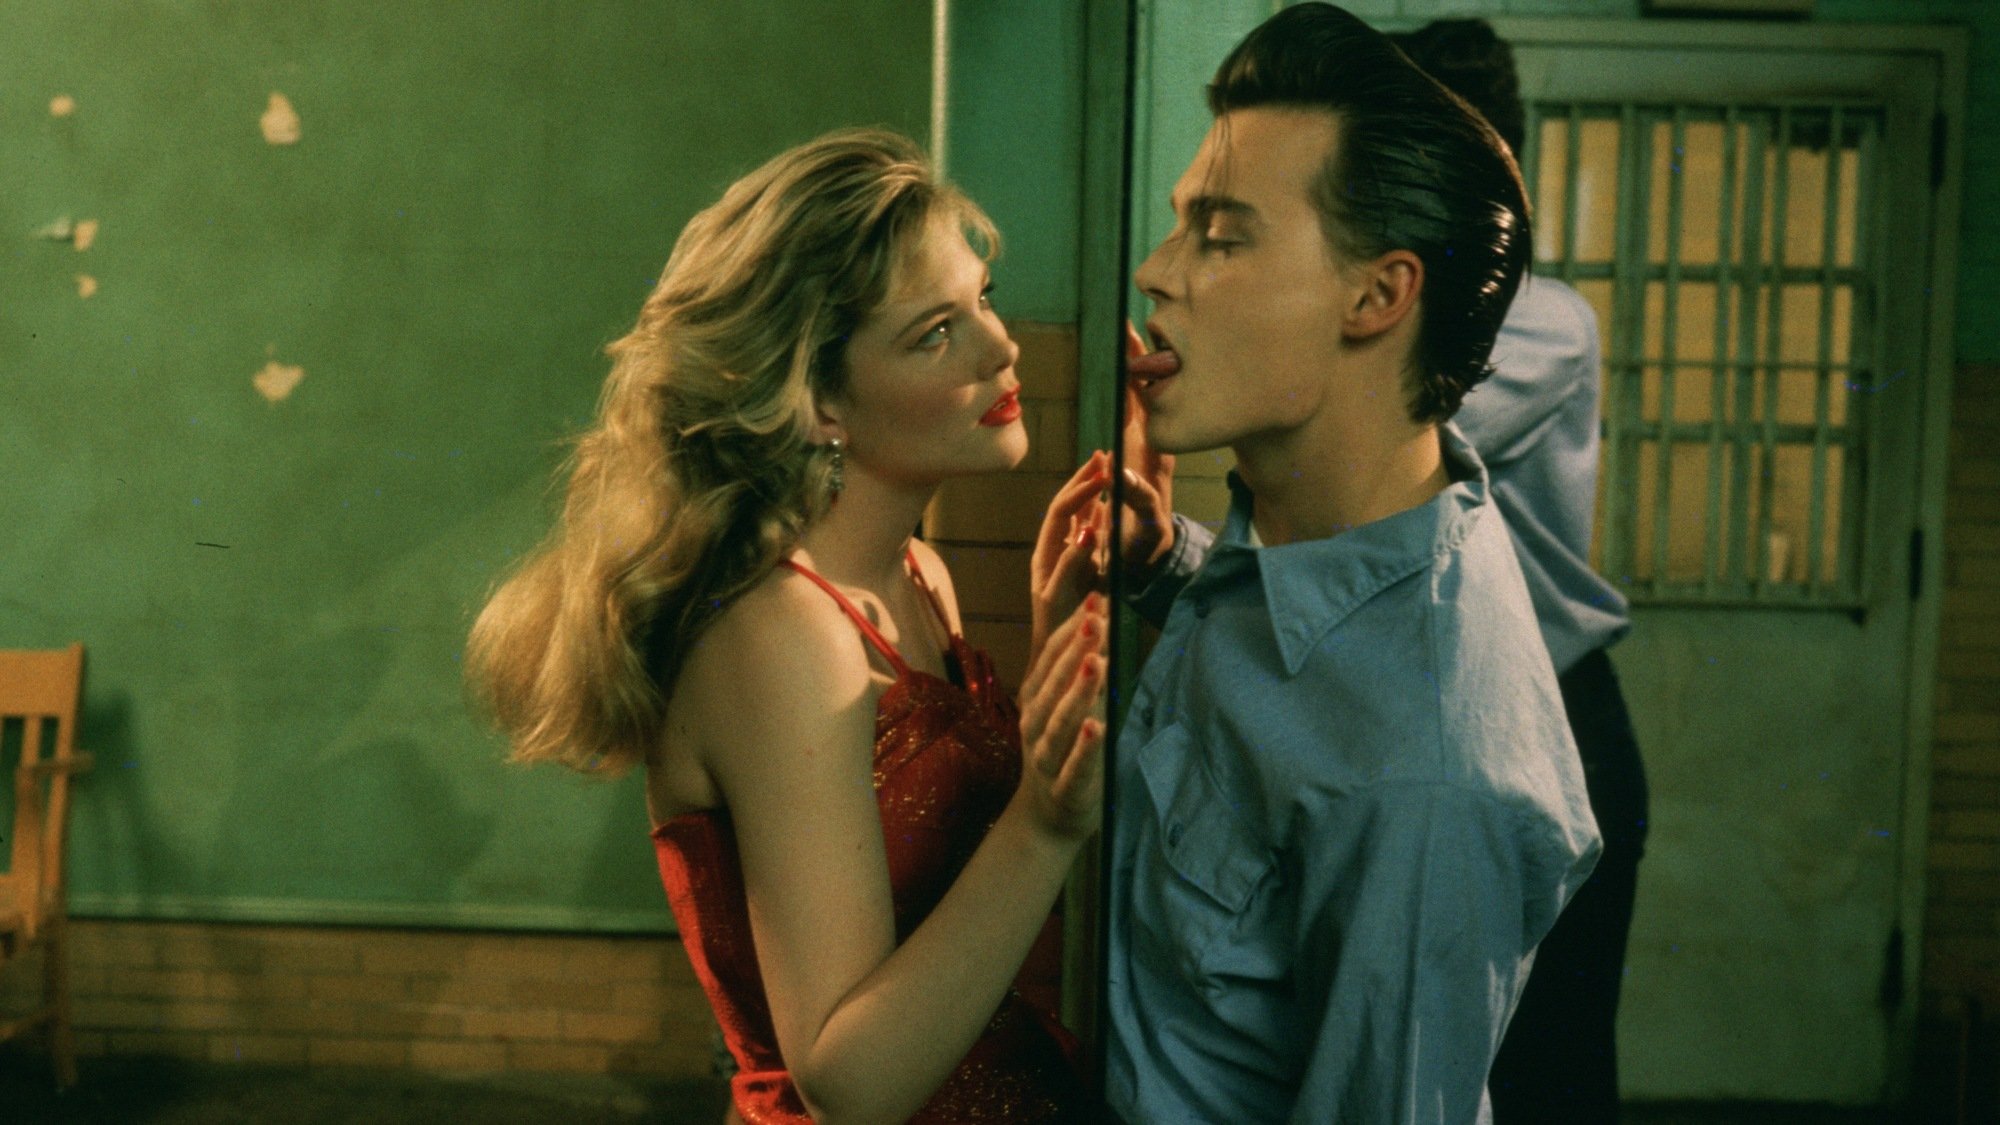 Amy Locane et Johnny Depp incarnent des adolescents amoureux dans "Cry-Baby".